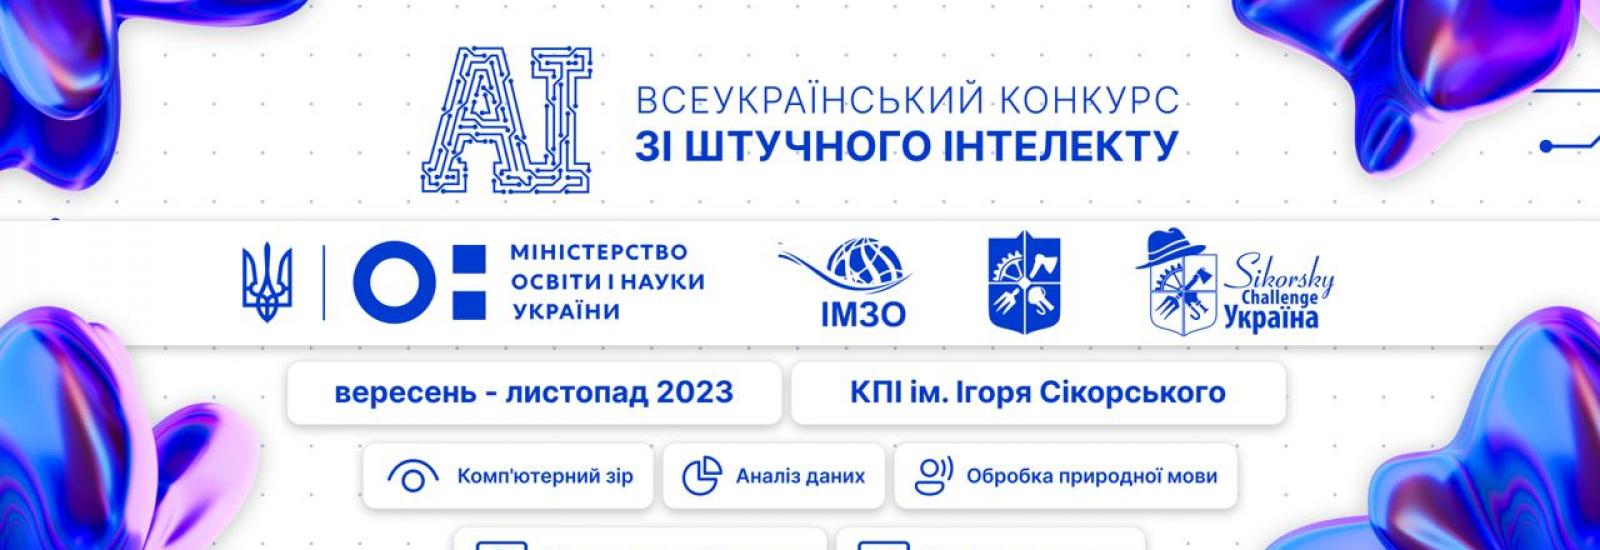 Первый Всеукраинский конкурс студенческих научных работ по искусственному интеллекту 2023